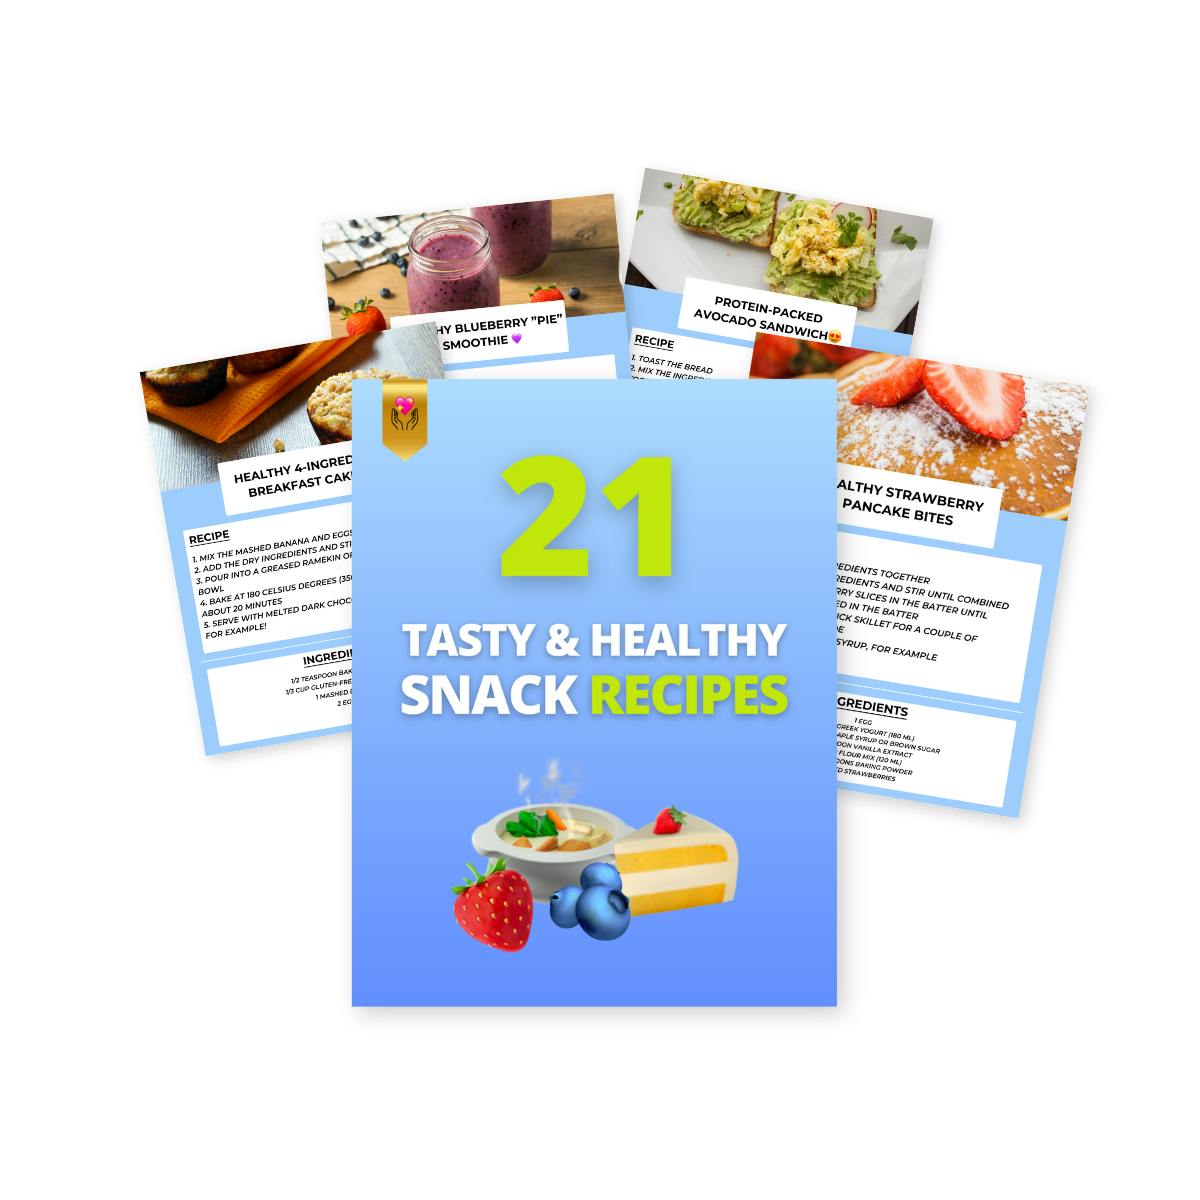 21 Tasty & Healthy Snack Recipes